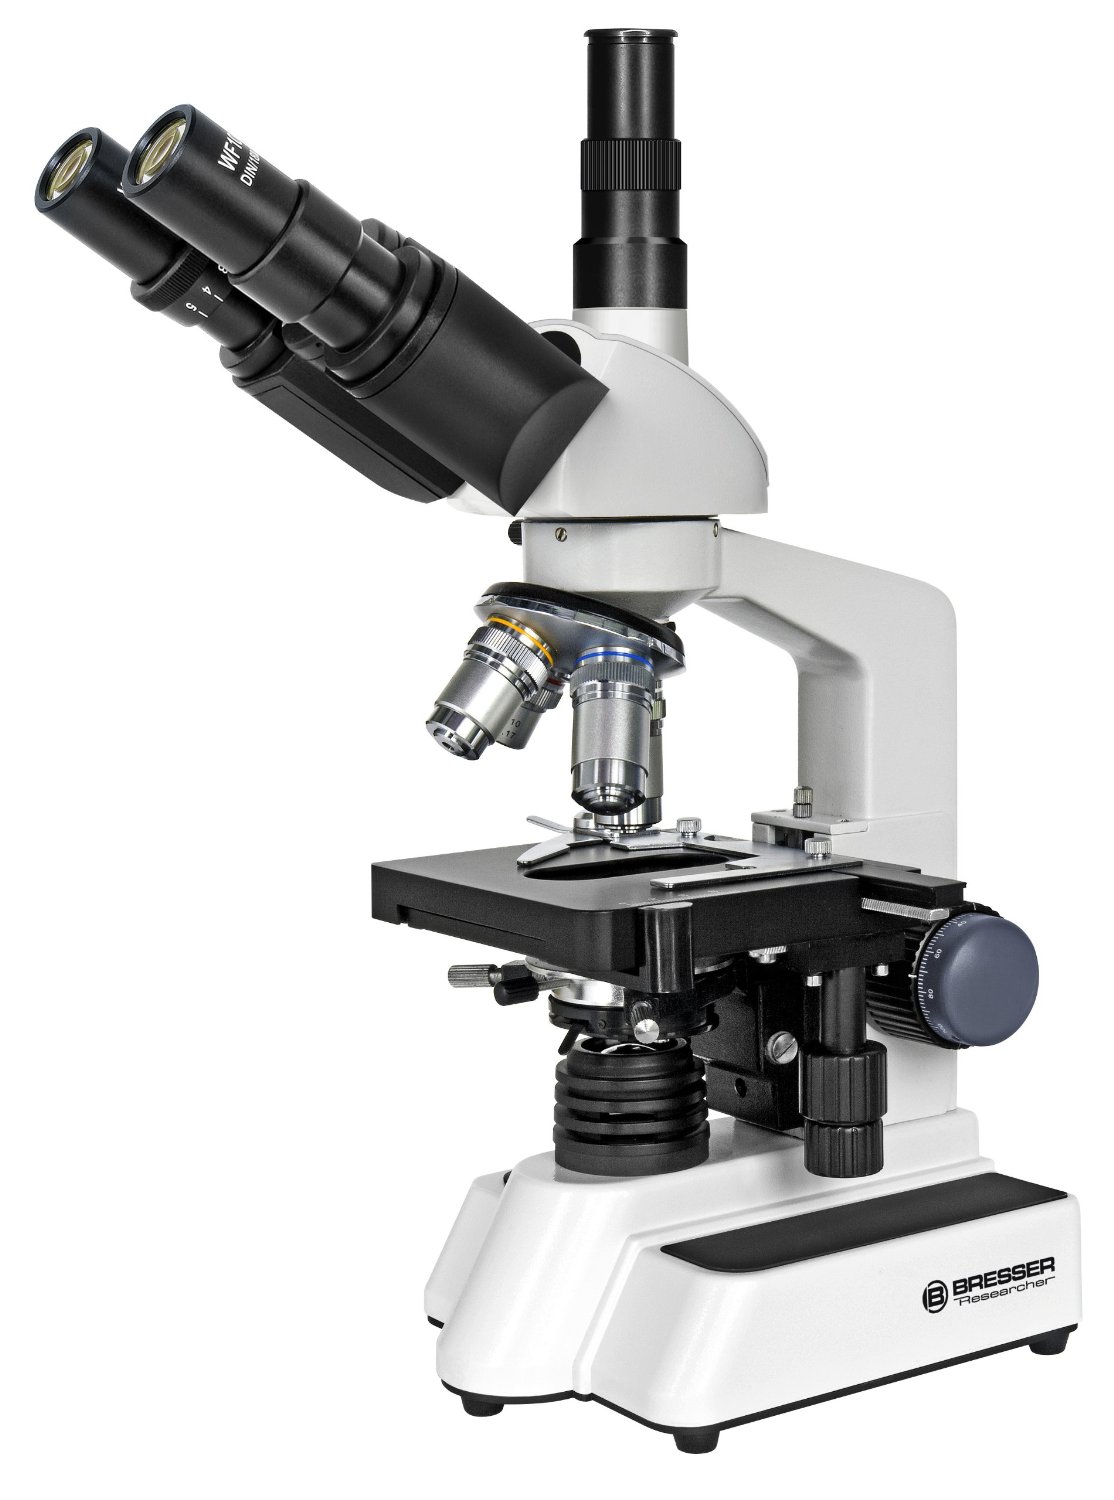 Microscopio Bresser 5723100 Researcher Trino: la nostra recensione